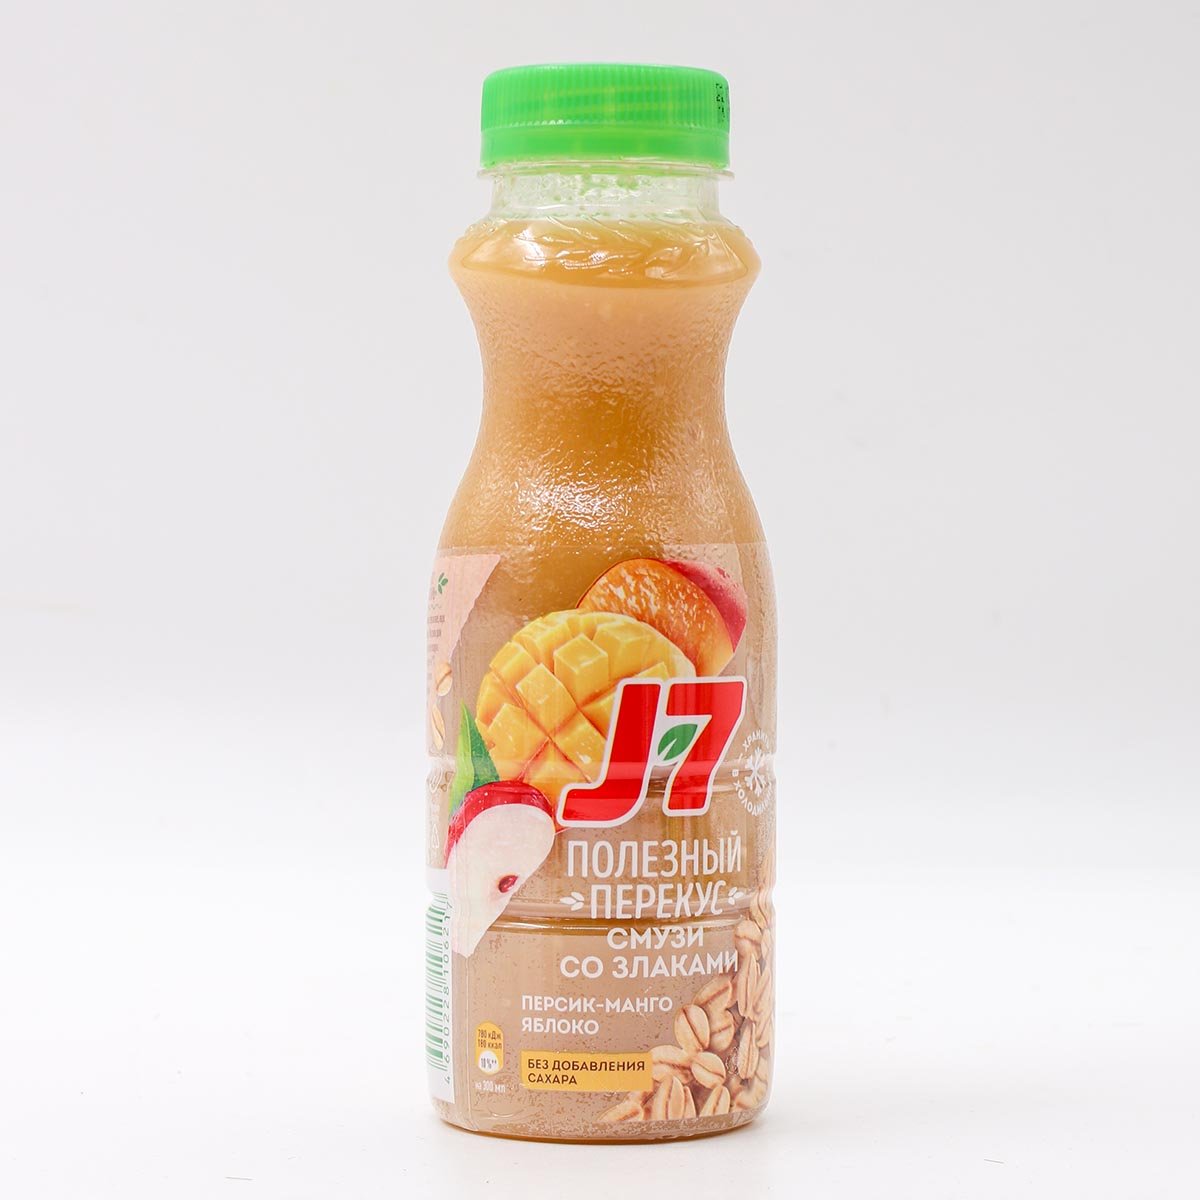 Питьевая товар. Смузи j7 персик манго яблоко 0,3 бутылка. Питьевые продукты. Продукт питьевой j7 полезный завтрак из киви банана.